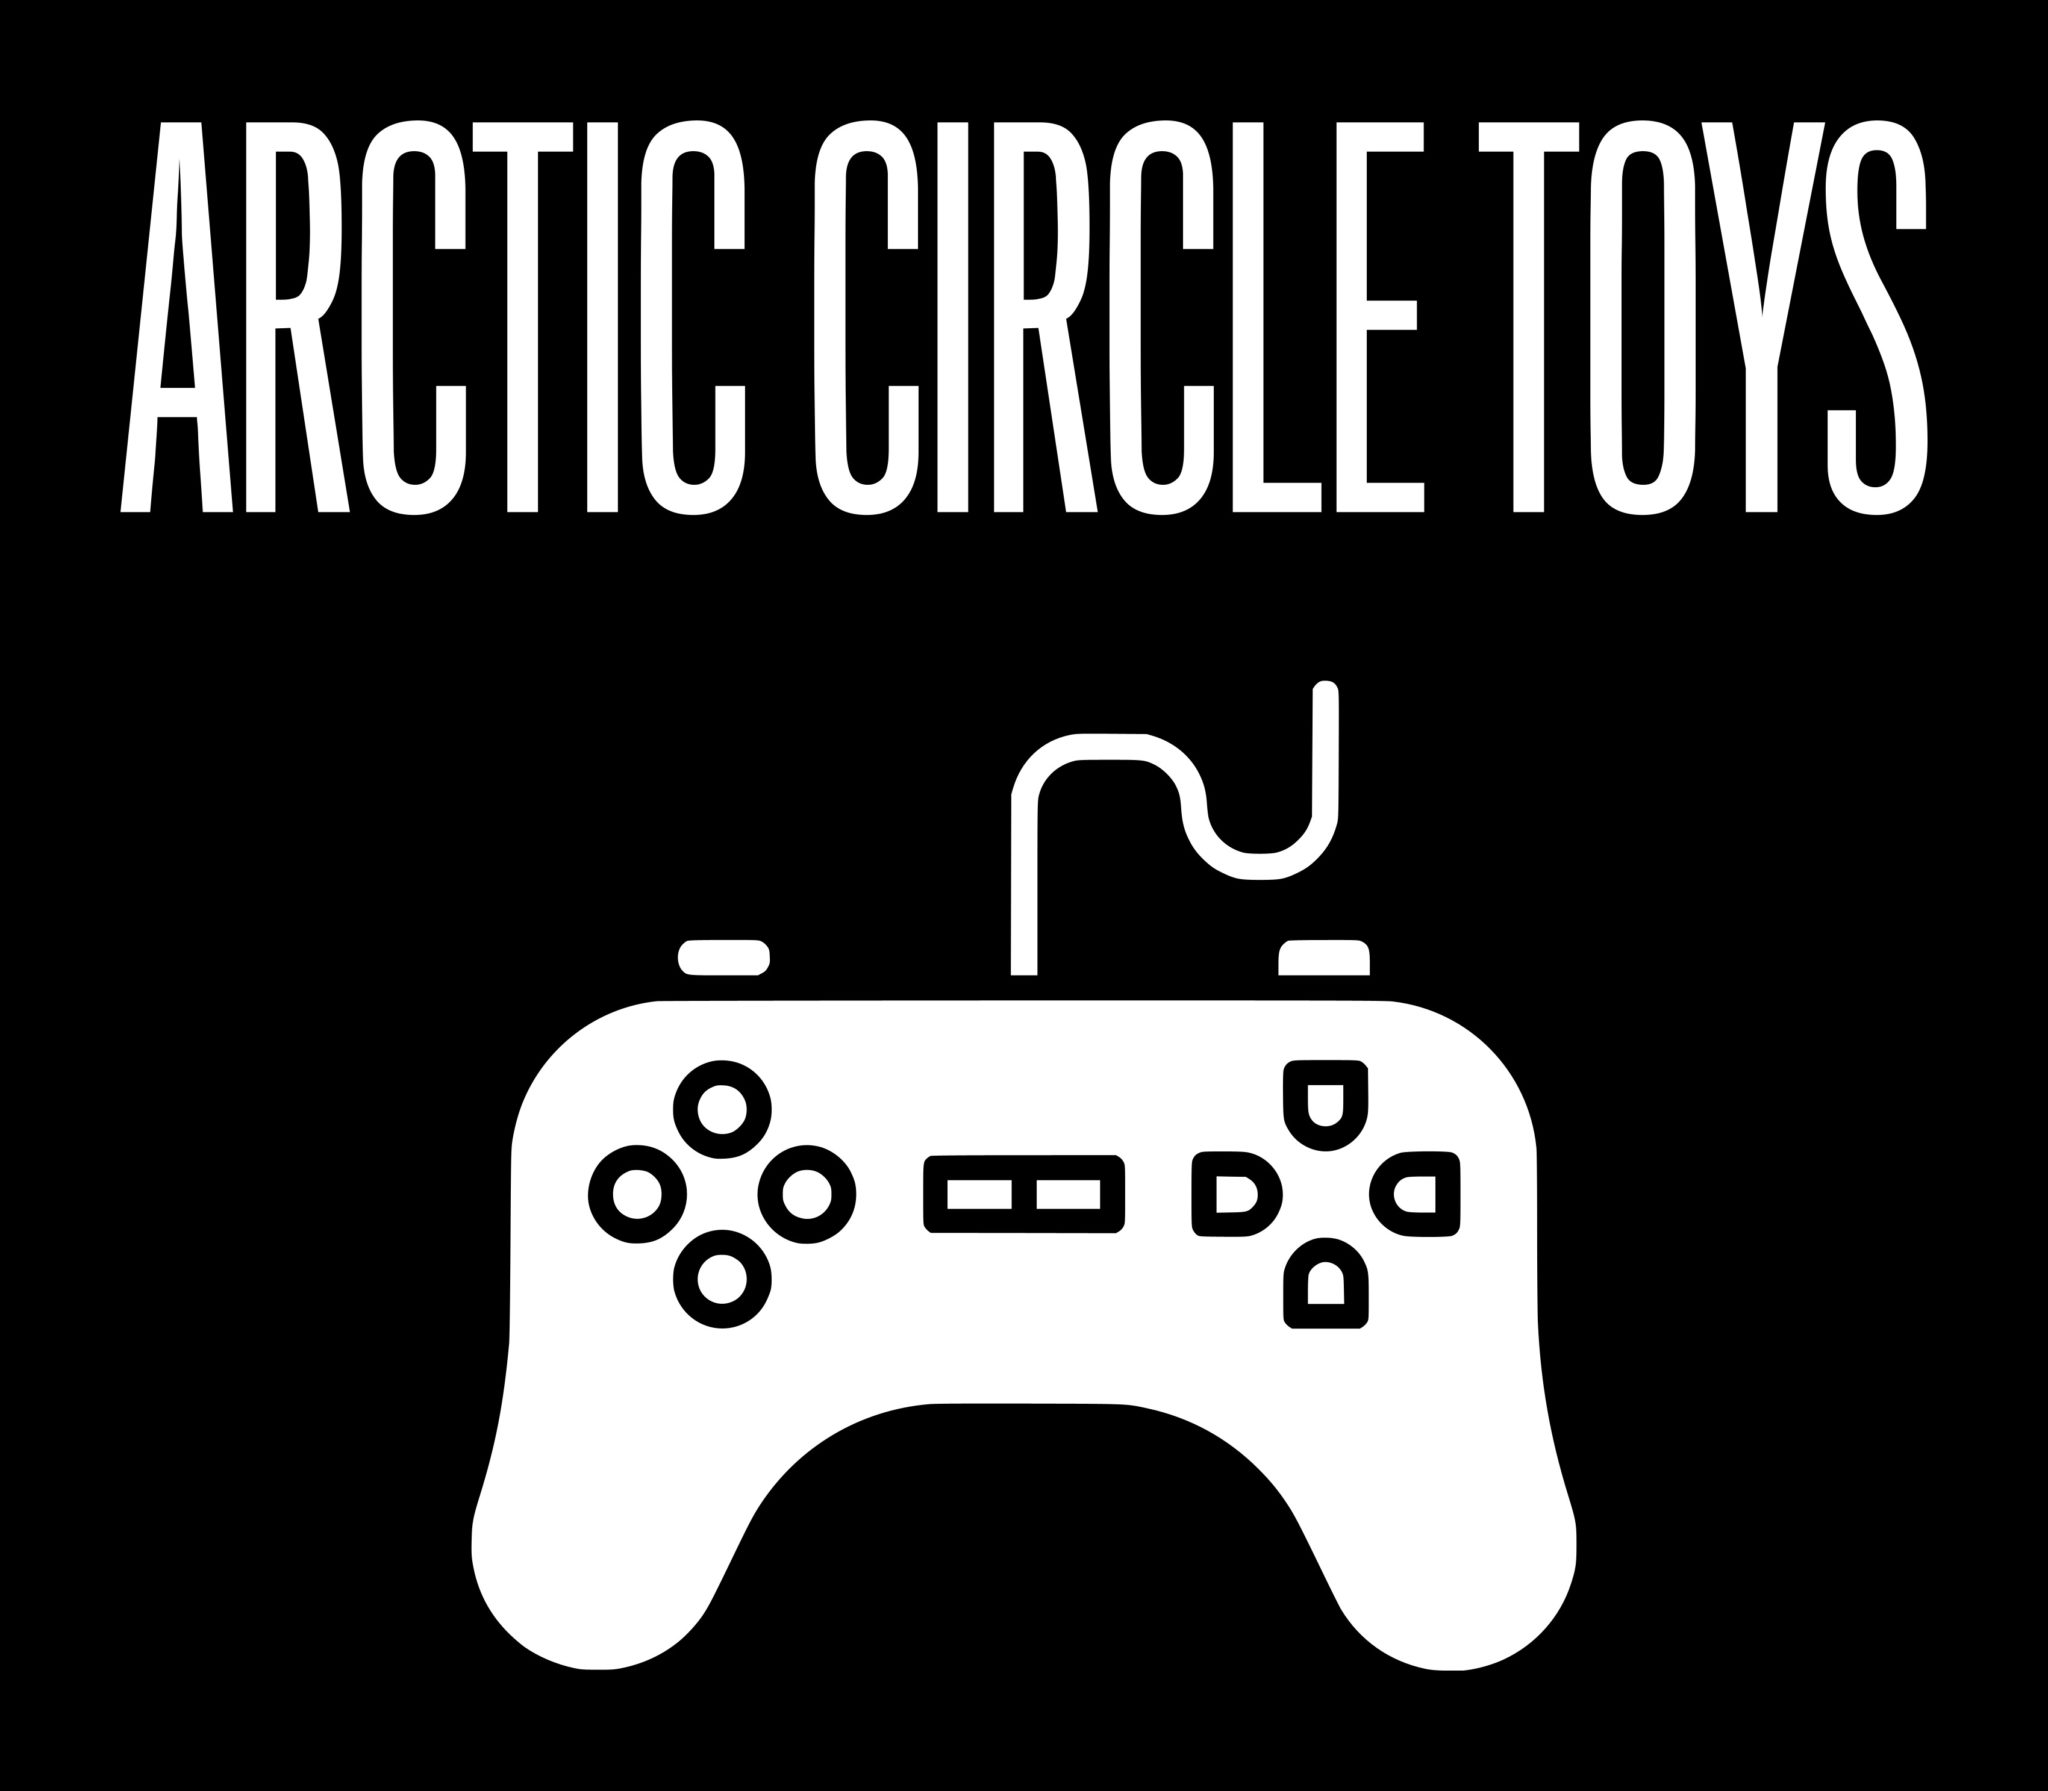 Arctic circle comics